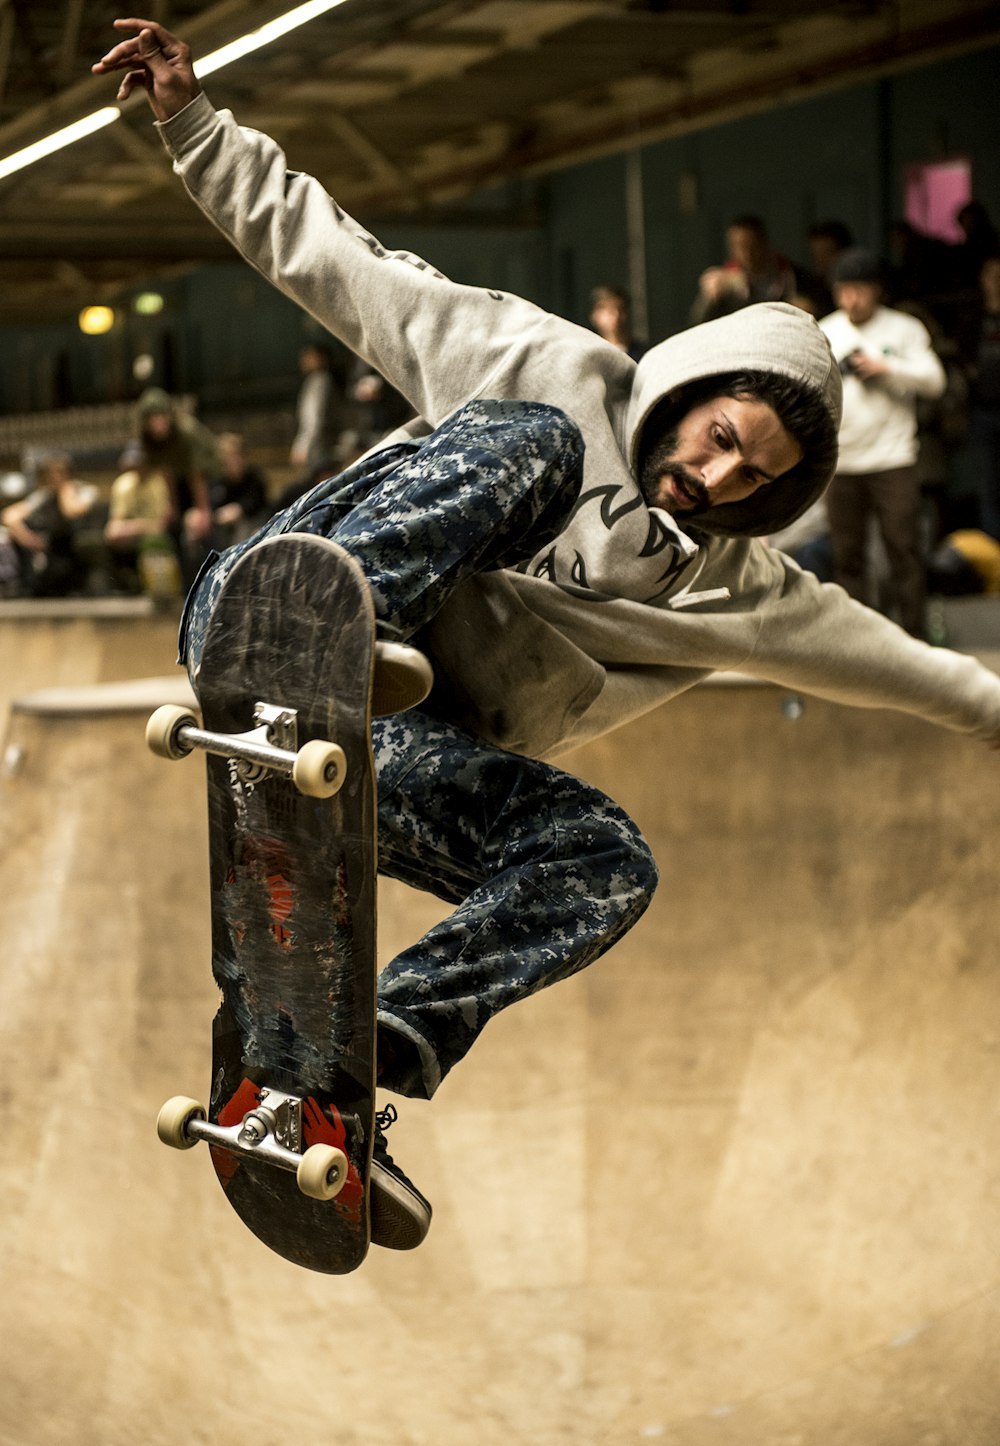 Skateboard Jump Pictures | Download Free Images on Unsplash